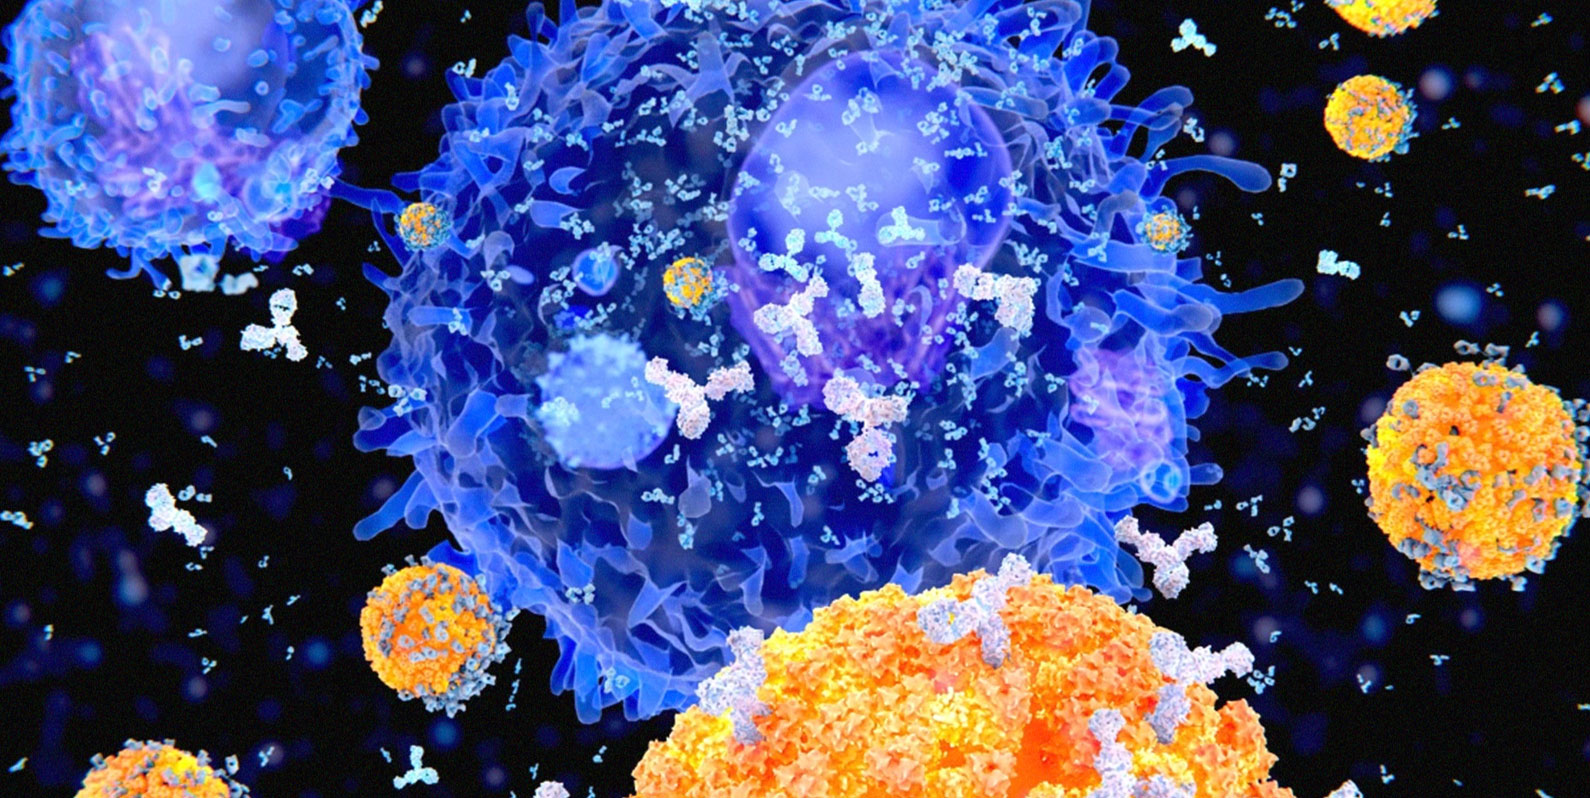 Uma nova terapia genética baseada em anticorpos será testada em humanos